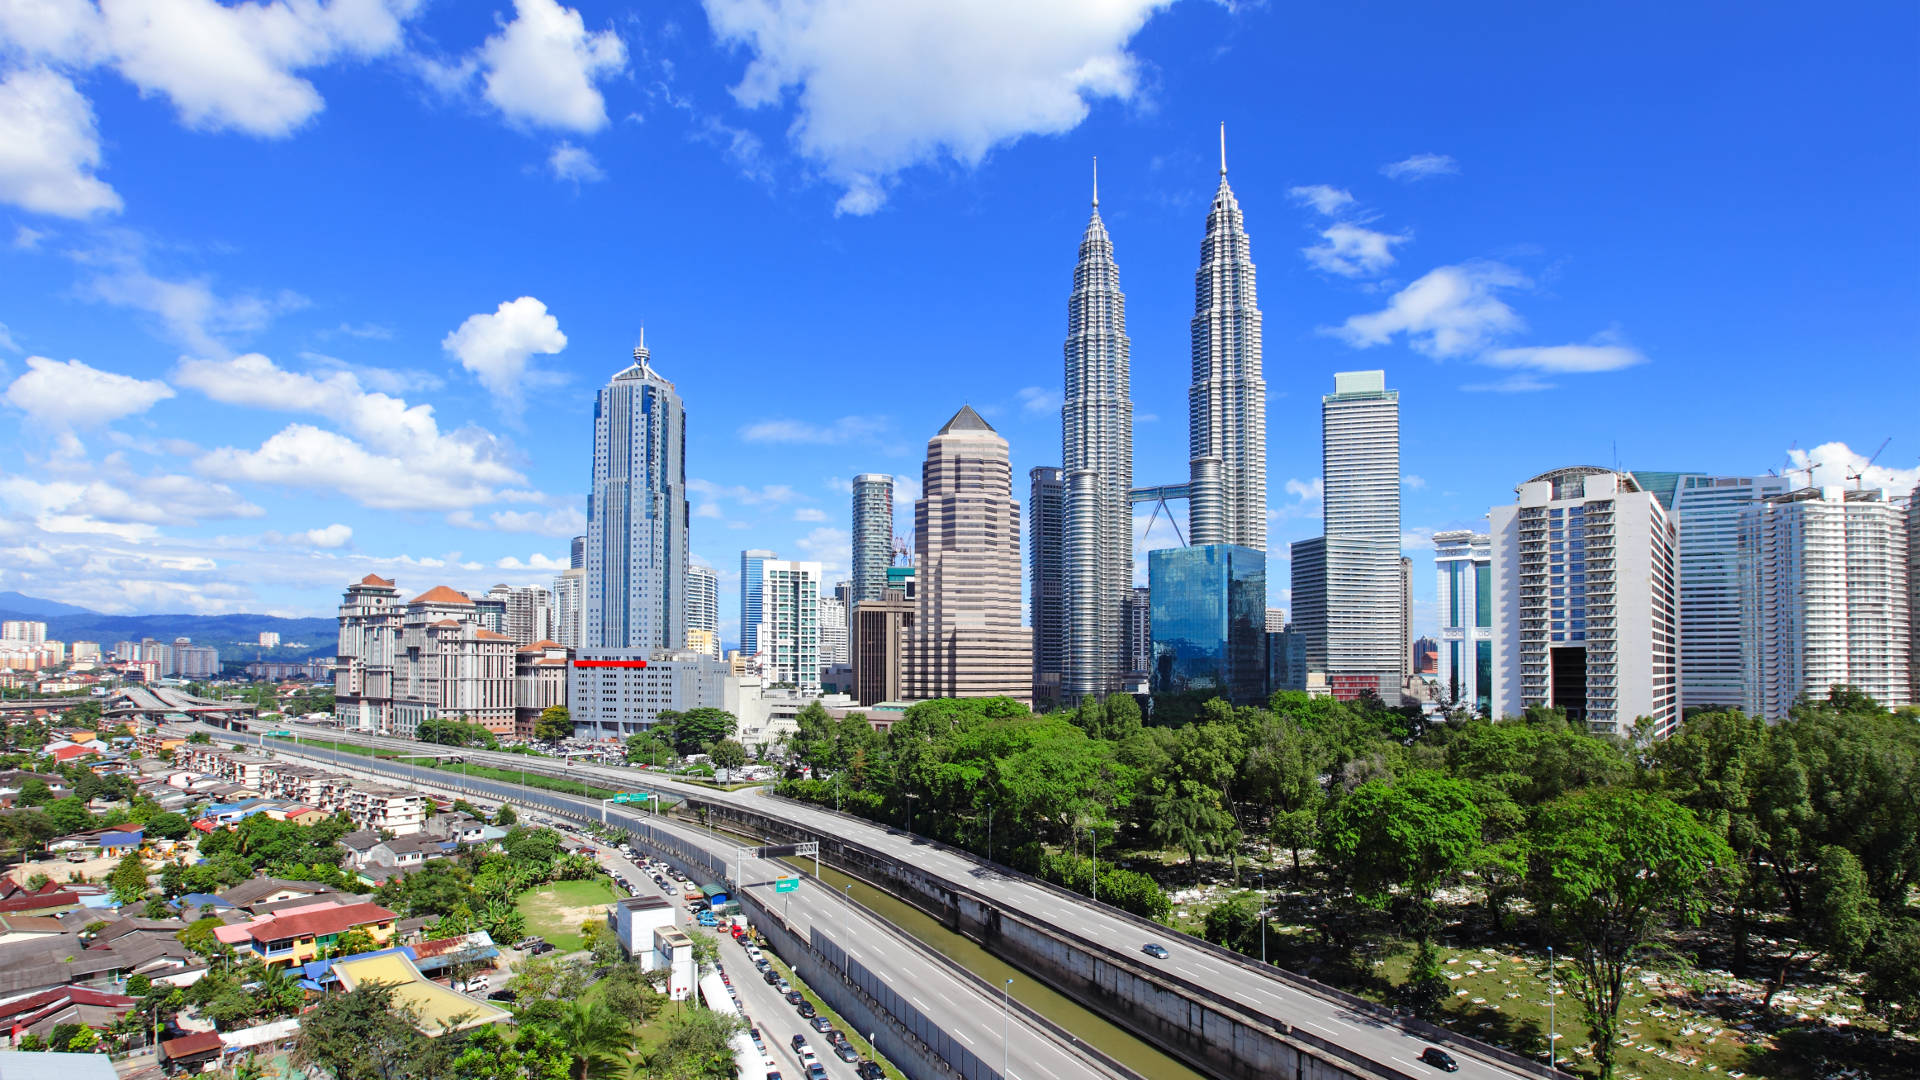 Kuala Lumpur, Malaysia - Tourist Destinations